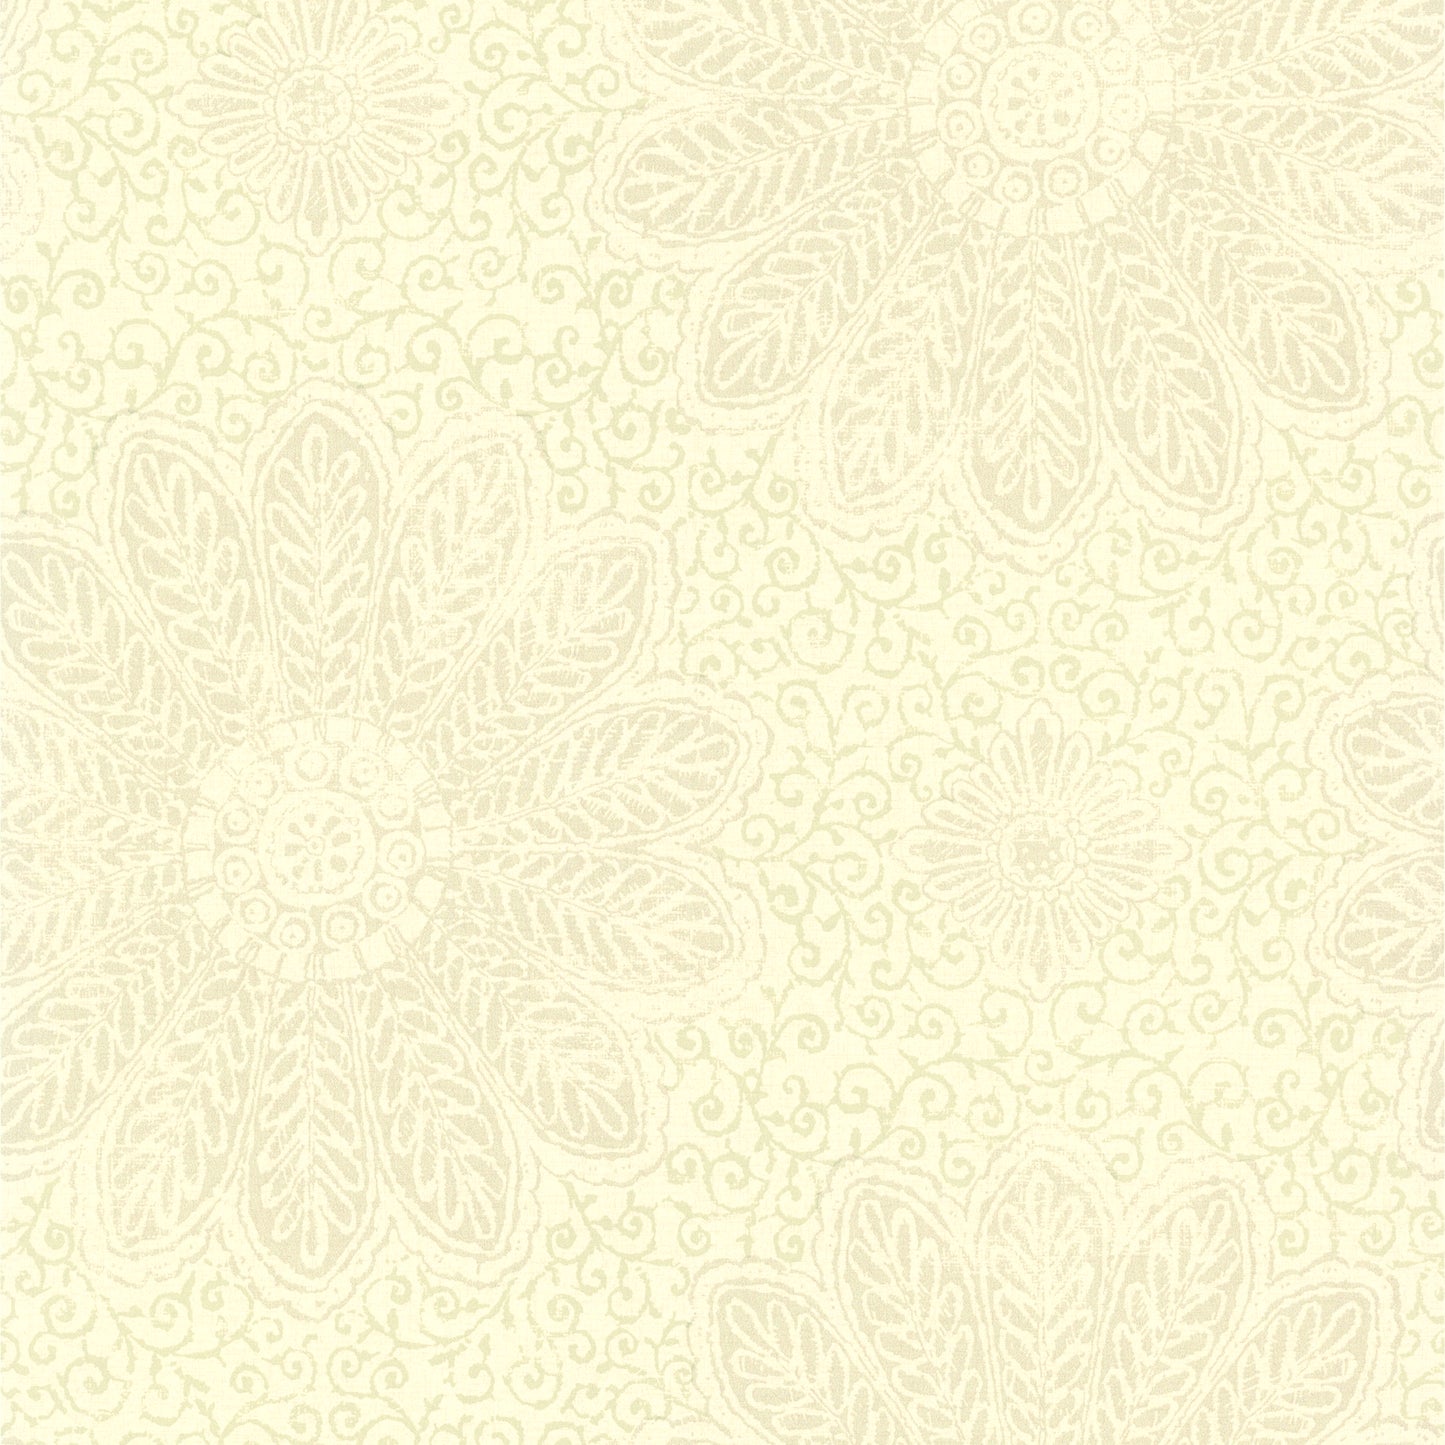 Purchase 2766-66951 KItchen & Bath Essentials Oxalis Neutral Floral Scroll Brewster Wallpaper